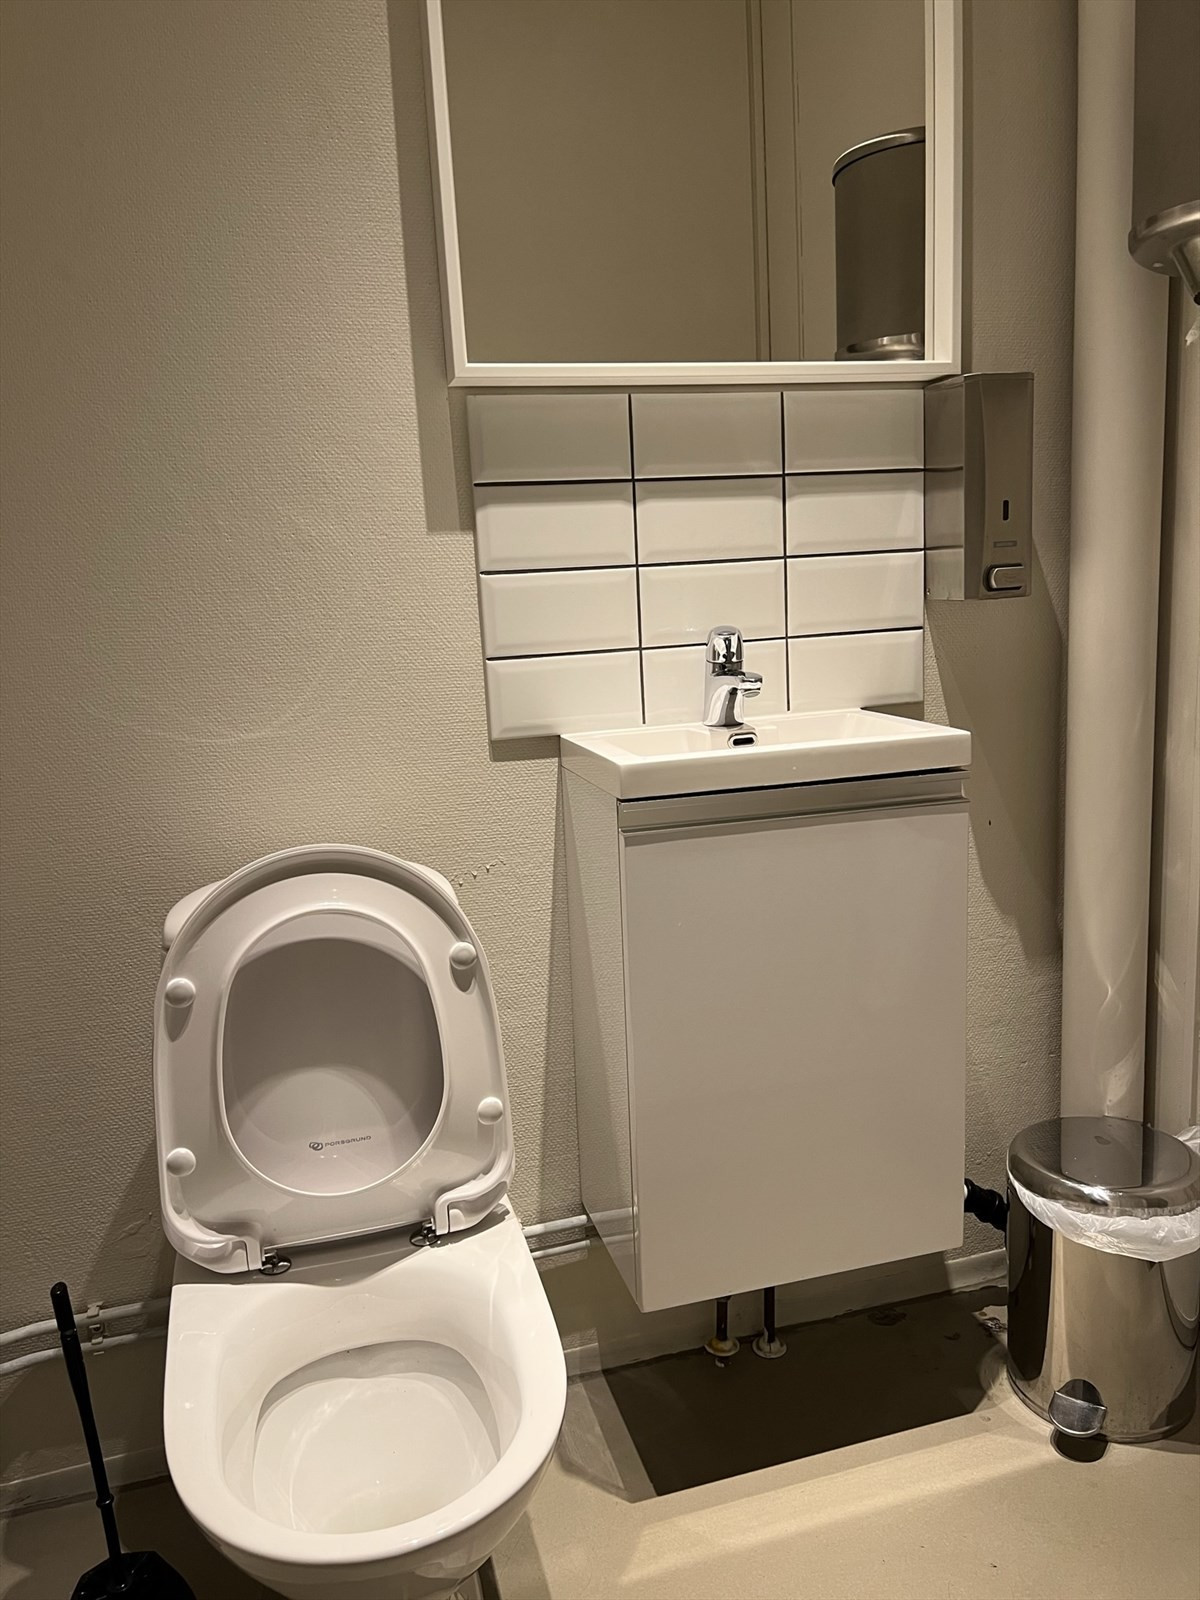 Toalett.JPEG